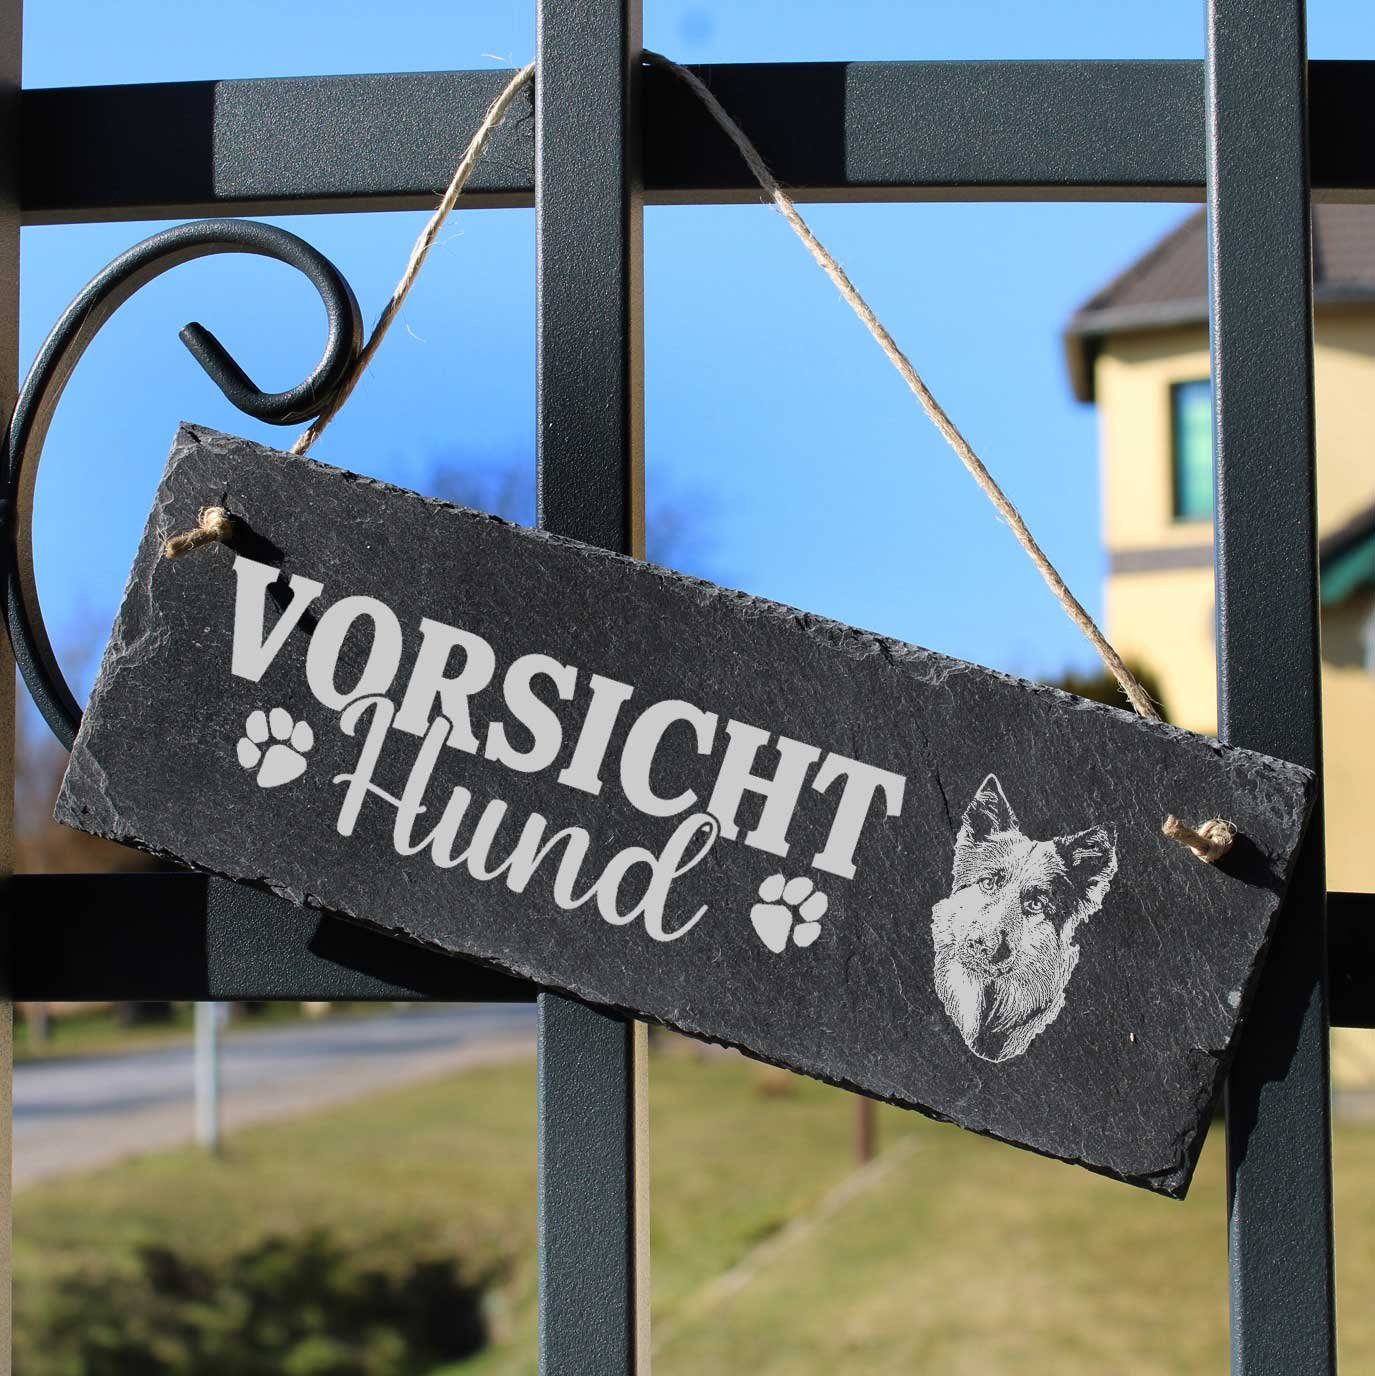 Dekolando Hängedekoration Vorsicht Hund Altdeutscher 22x8cm Schäferhund Schild